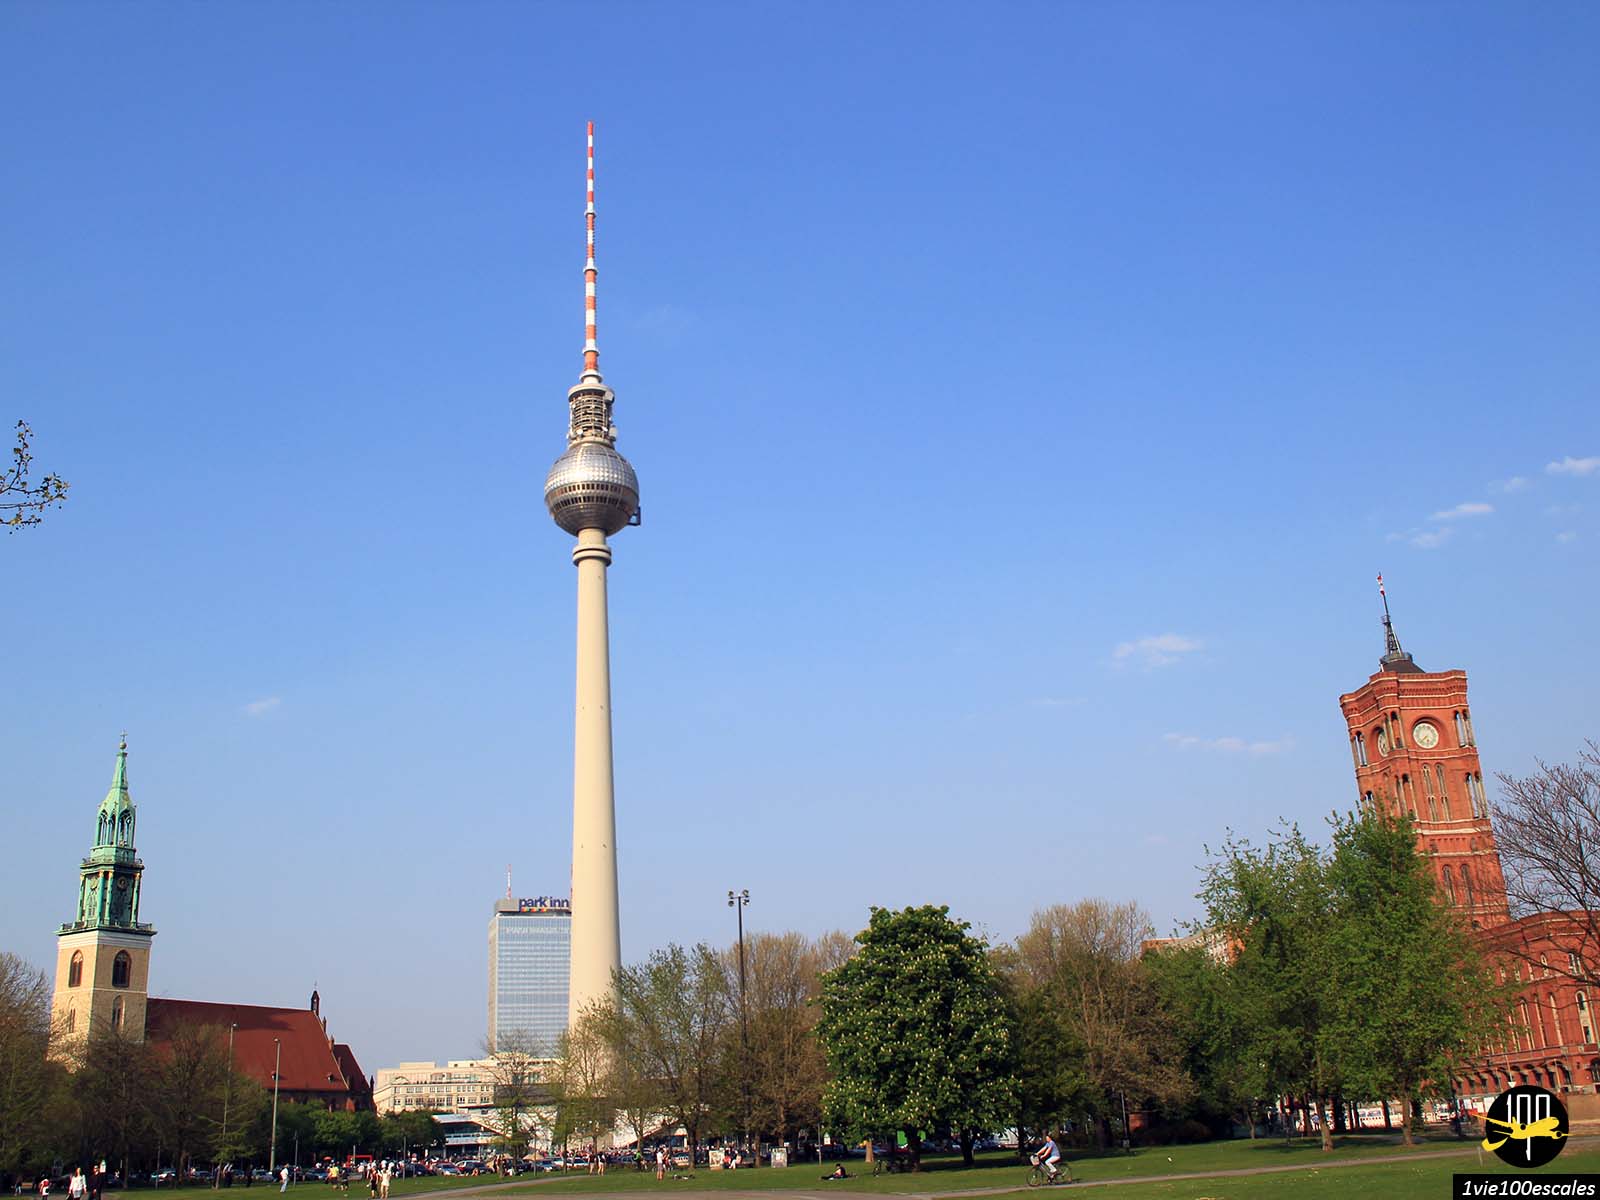 L'un des lieux de rencontre centraux de Berlin, l'Alexanderplatz regorge d'attractions, de bâtiments, de restaurants et de boutiques